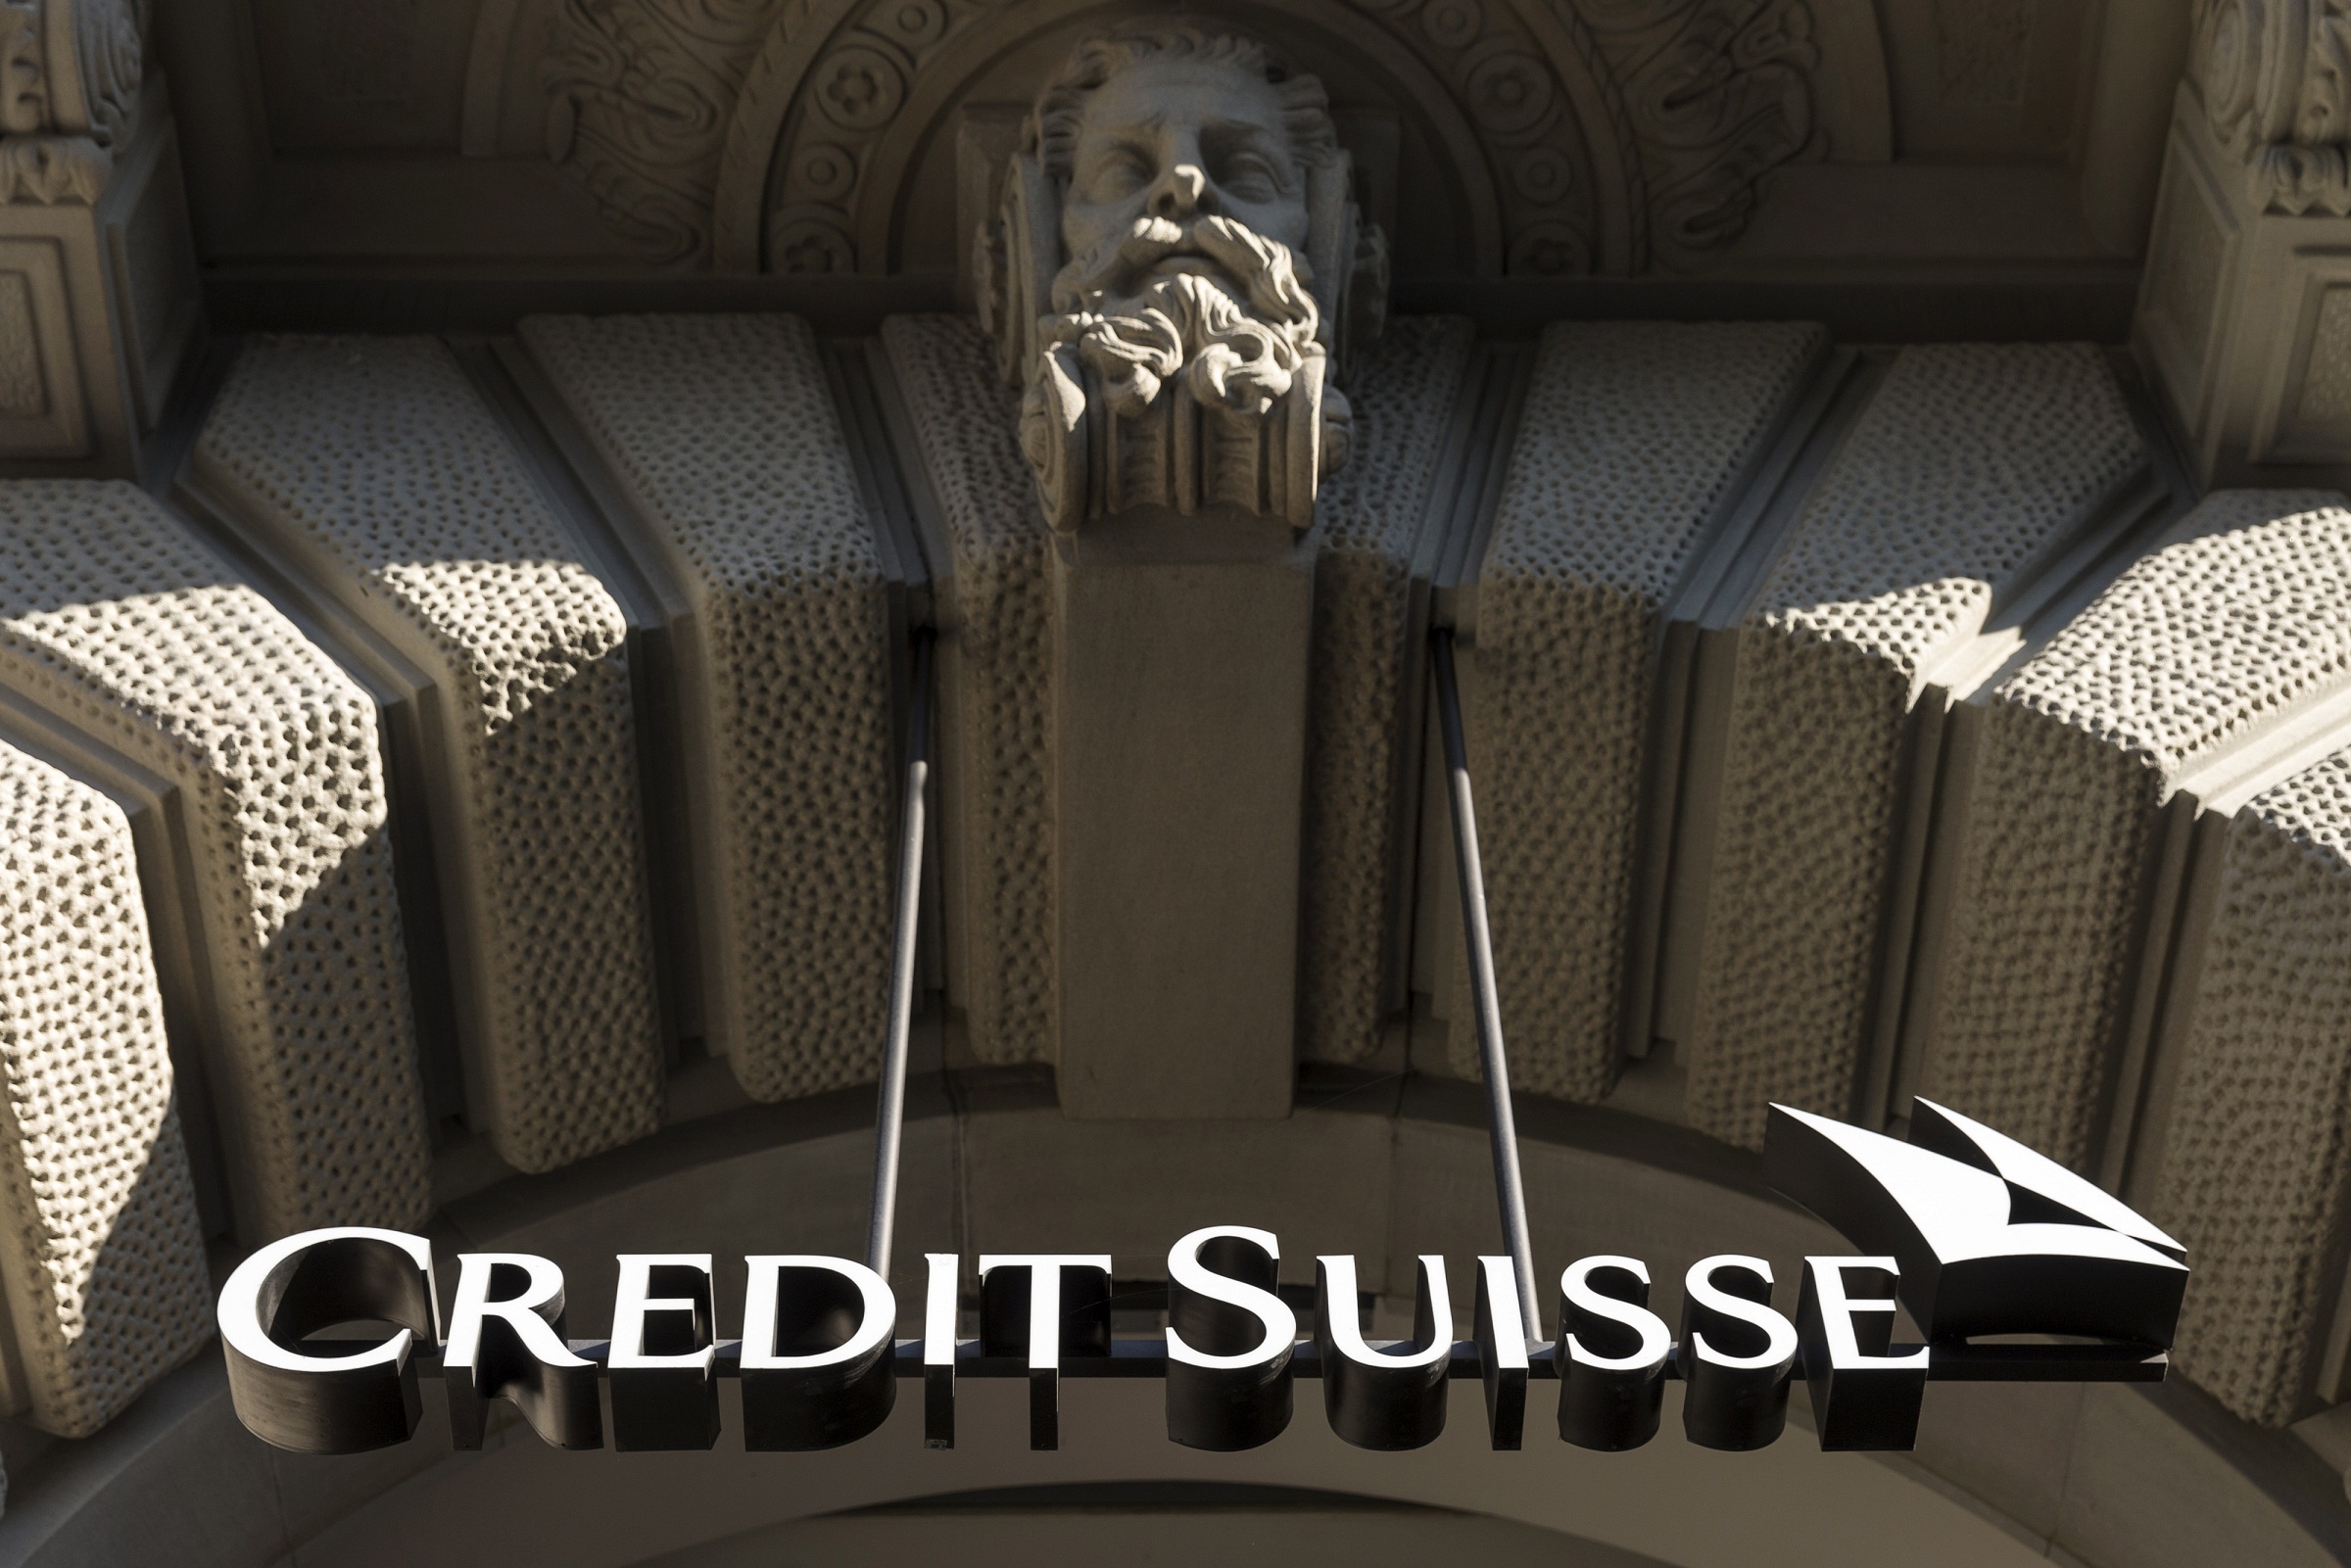 Credit Suisse recomendaram a compra de ações de empresas brasileiras listadas na Bovespa